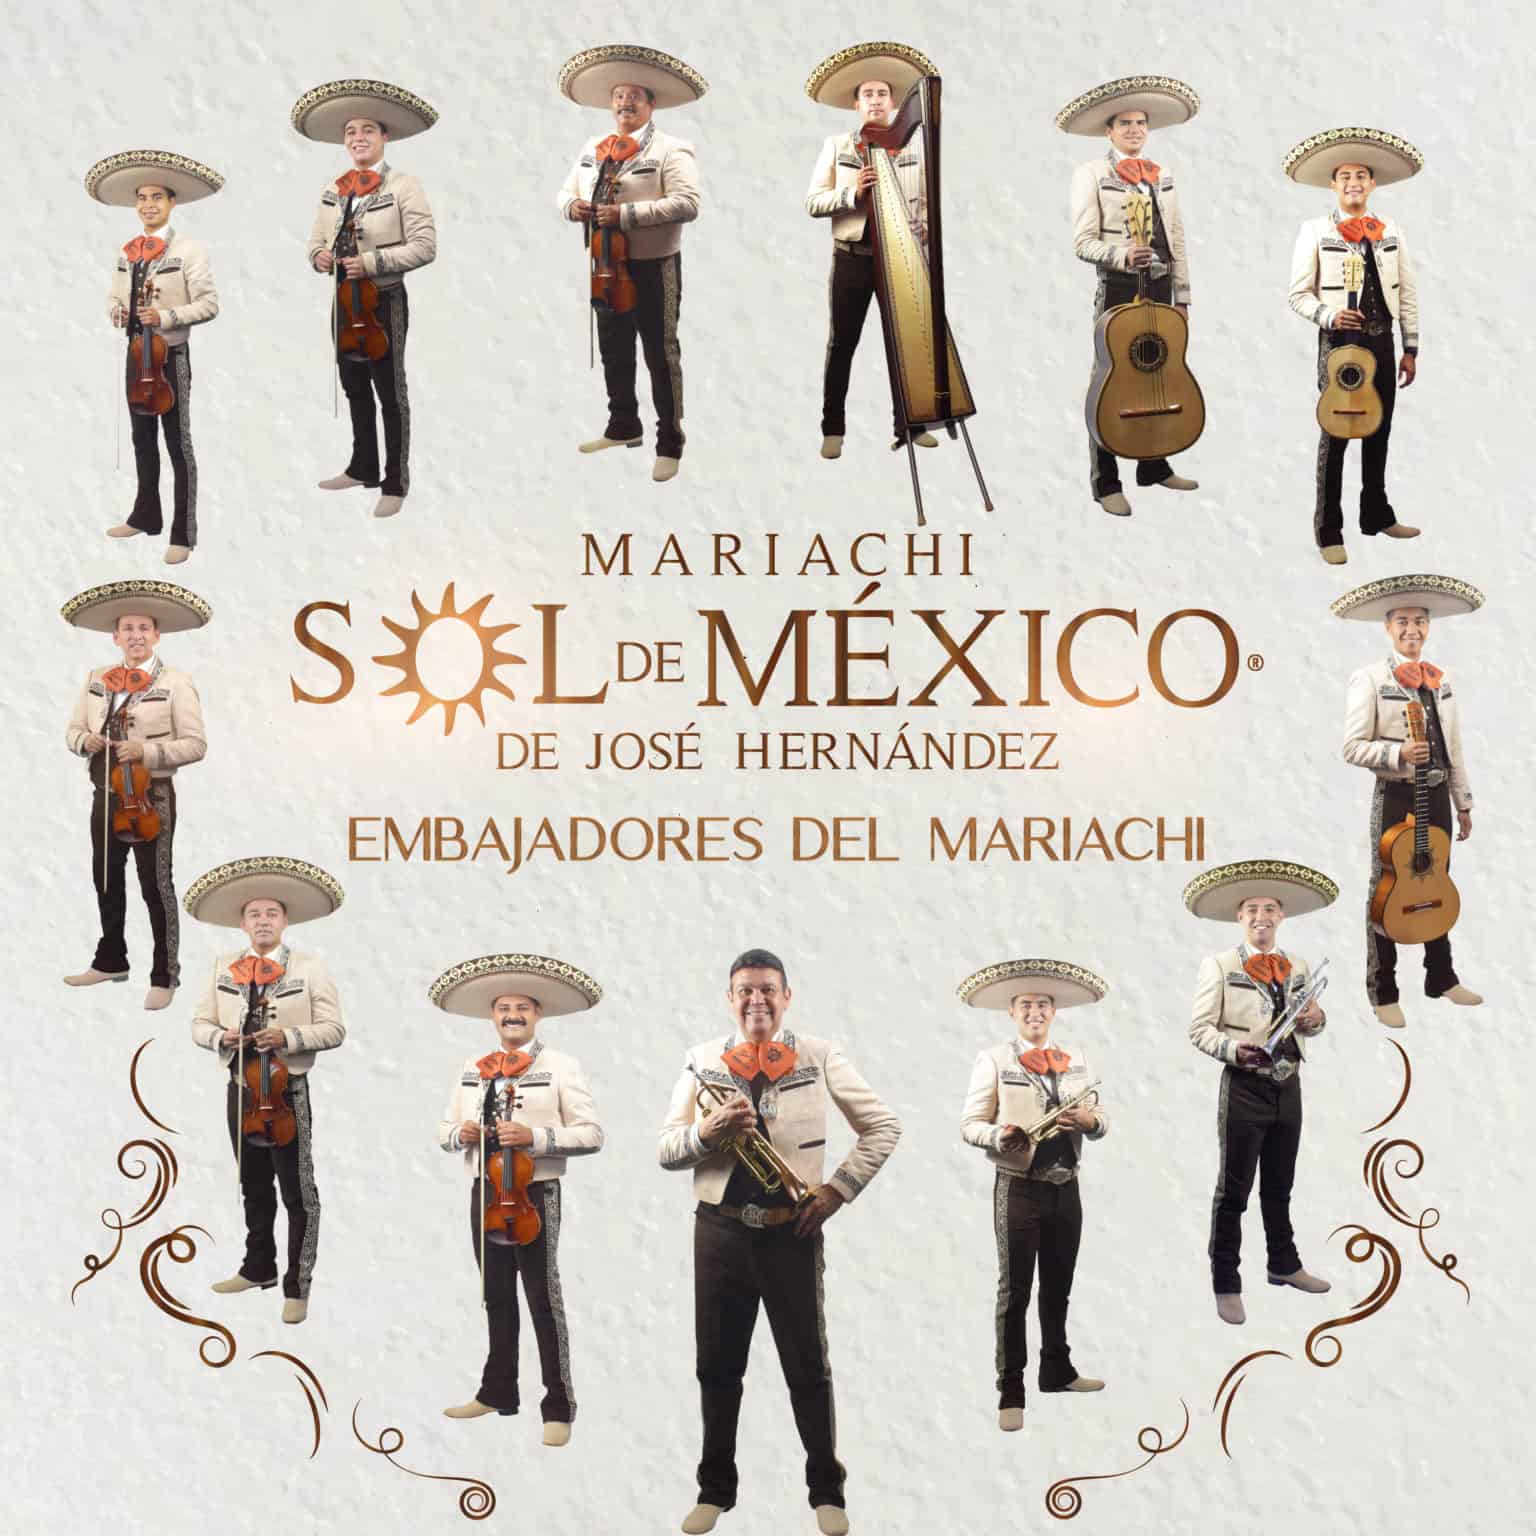 Mariachi Sol de Mexico to Perform in San Antonio Mariachi Music